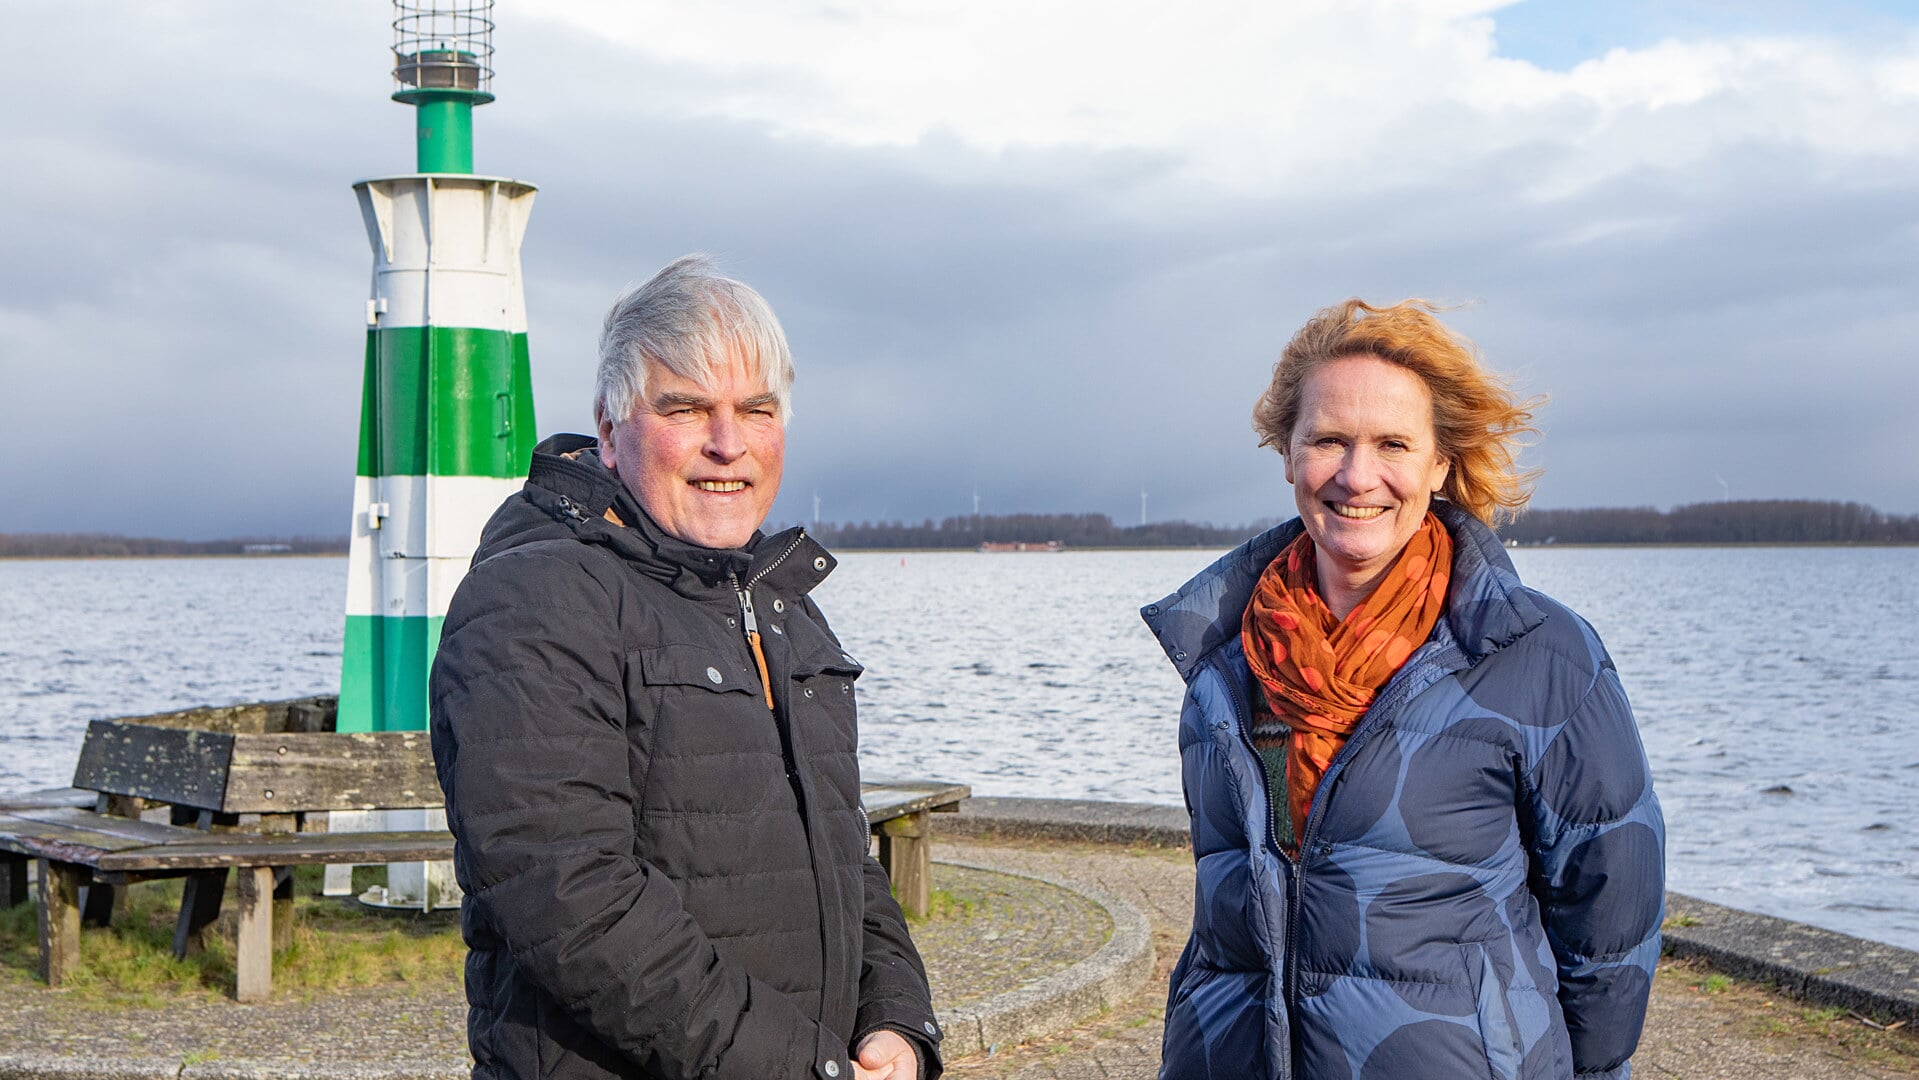 Gerrit en Nicolette zijn trots op Buurtvereniging Aanloophaven. 